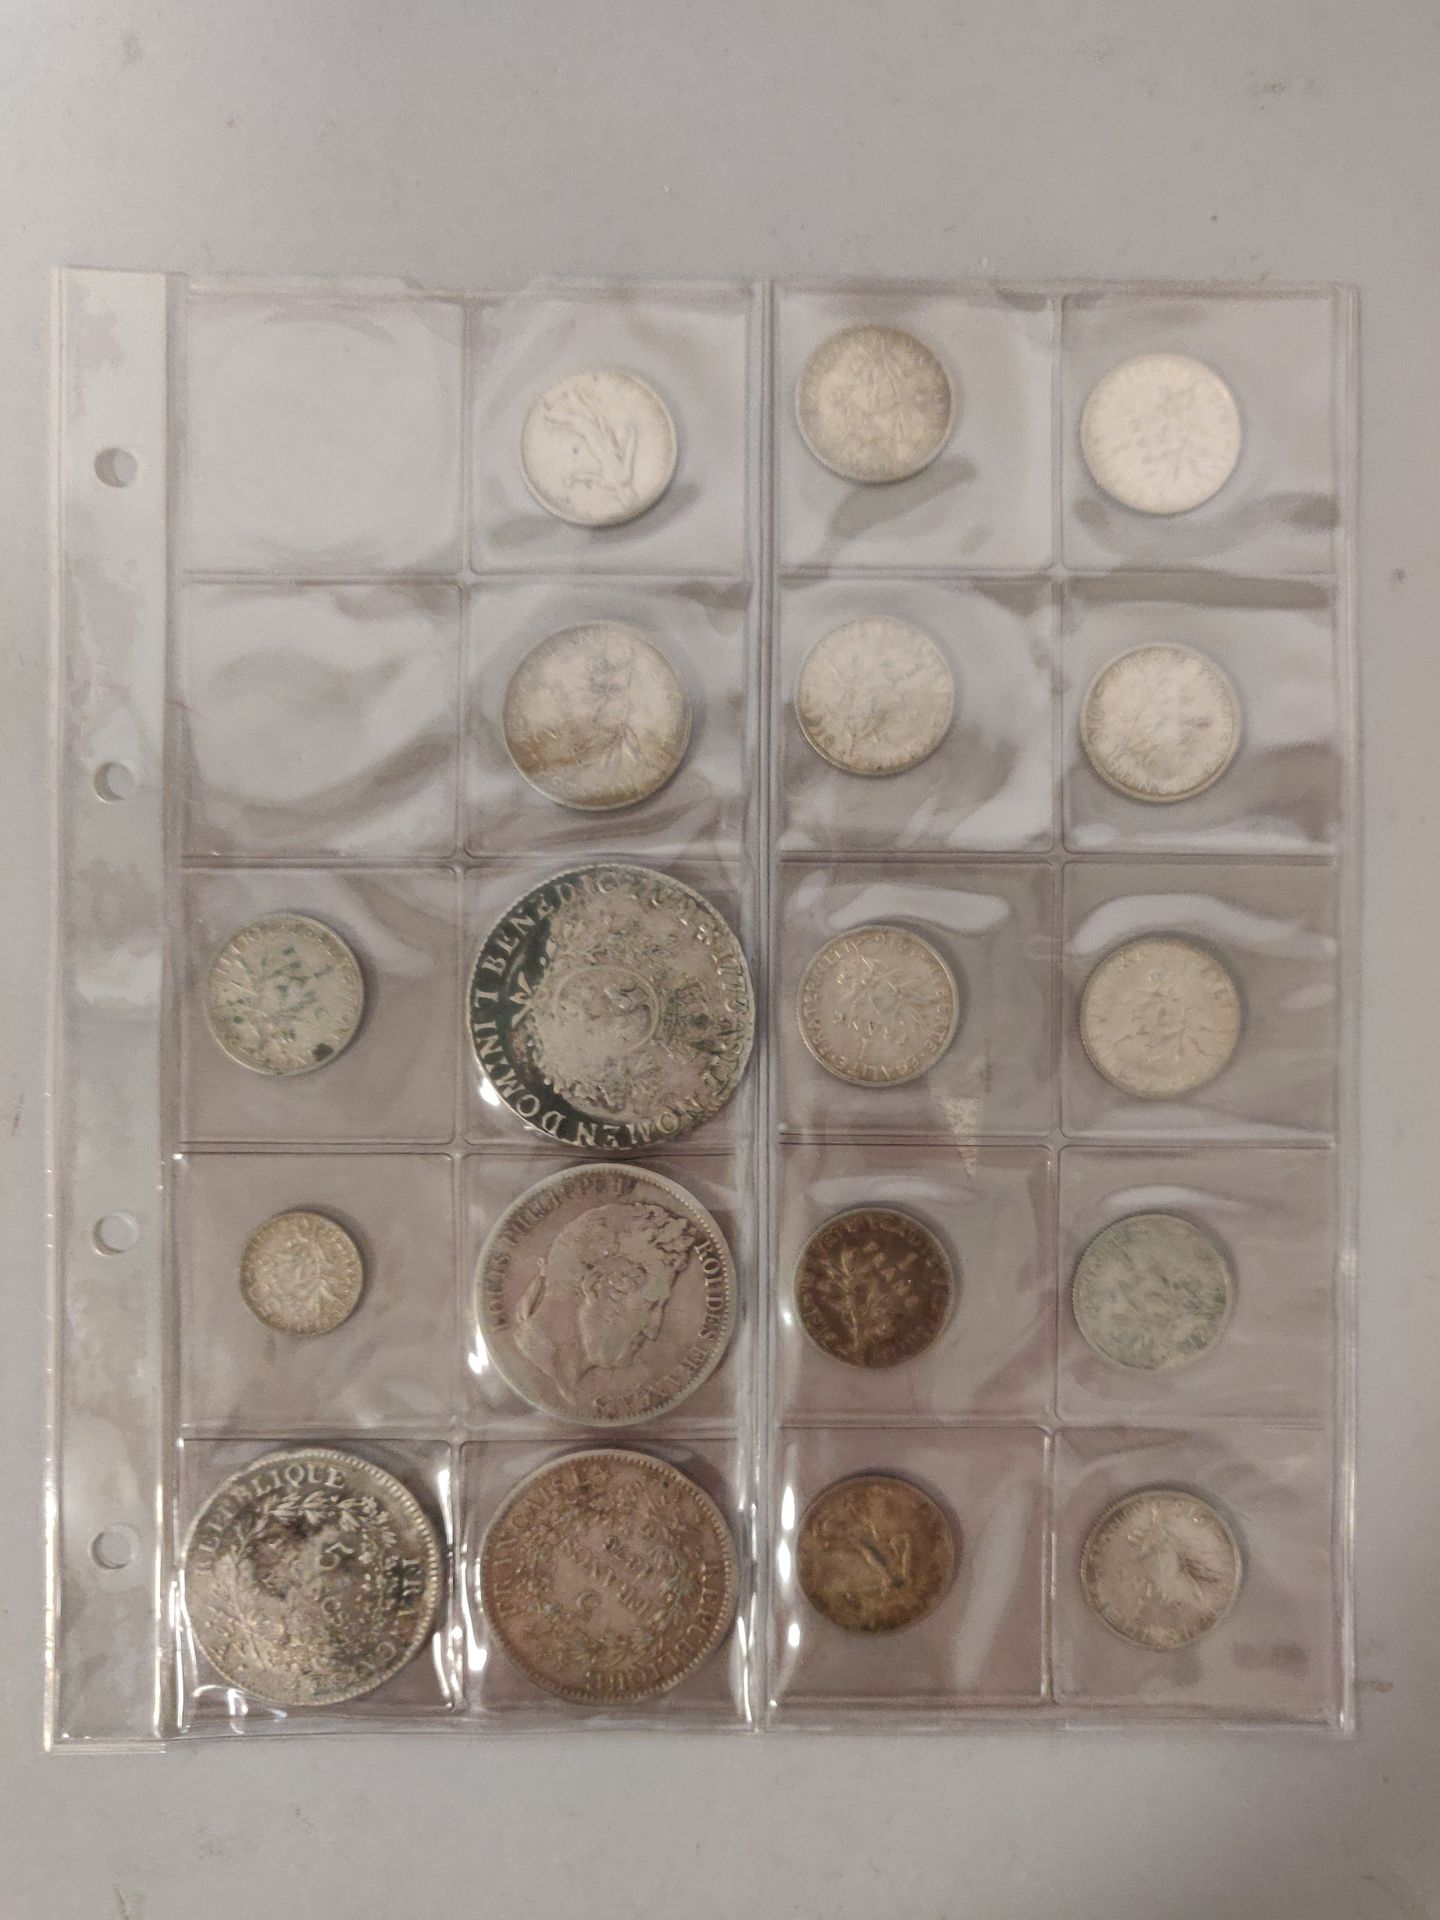 Null 数量：包括3枚5法郎硬币（1枚路易-菲利普，2枚大力士），1枚1773年路易十五硬币，11枚1法郎硬币，1枚50生丁硬币。